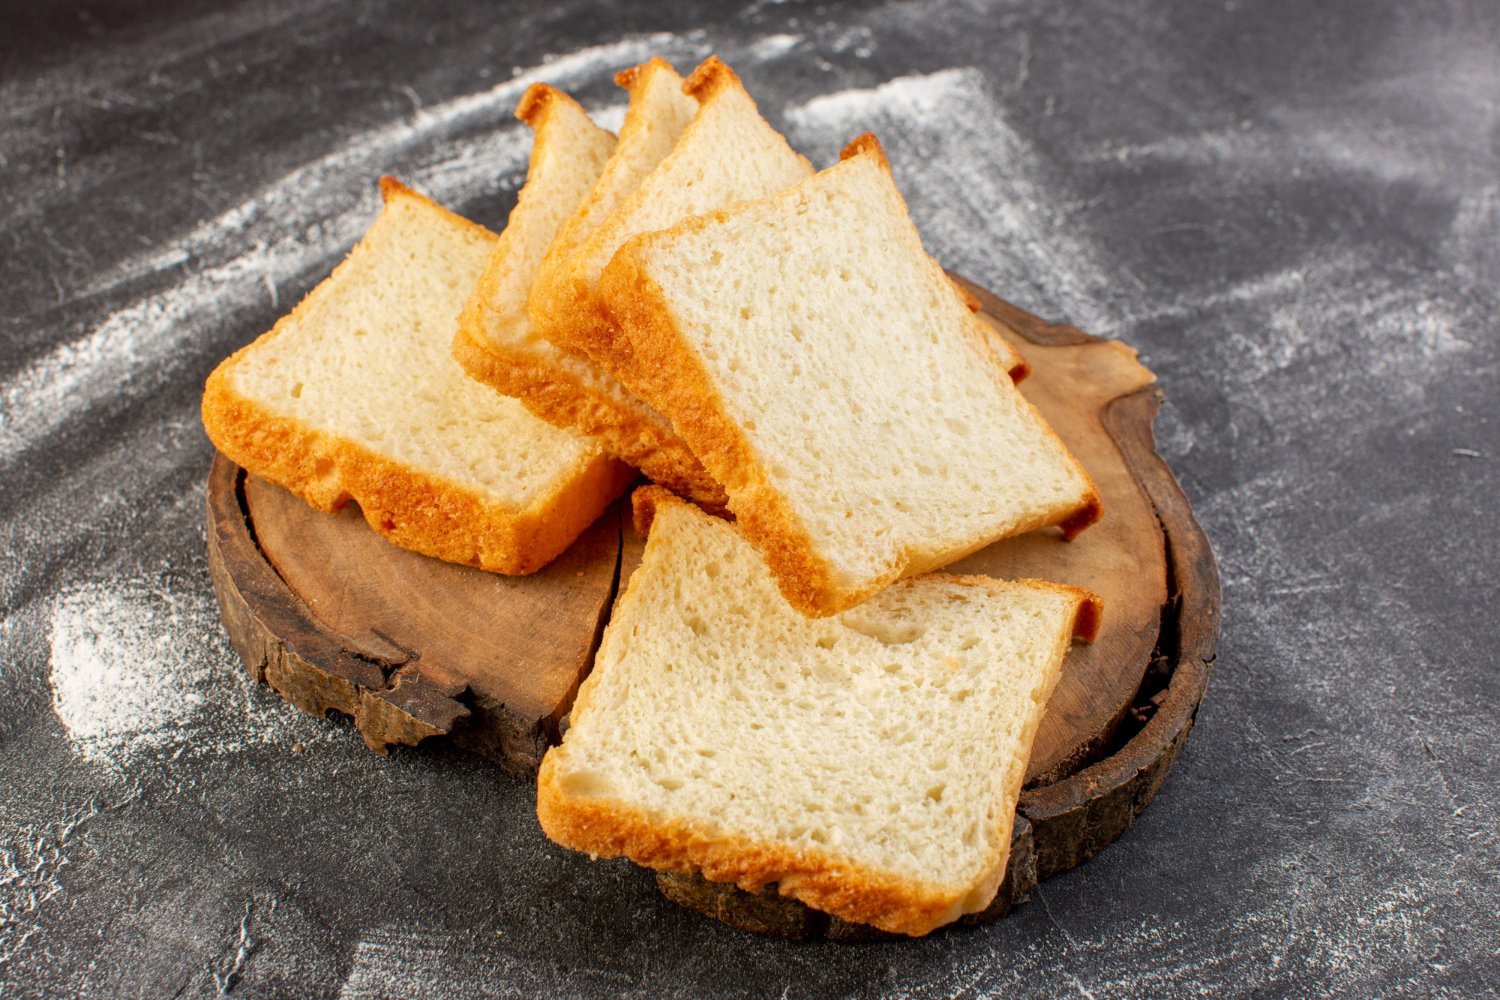 cara mengatasi mual setelah makan dengan roti tawar